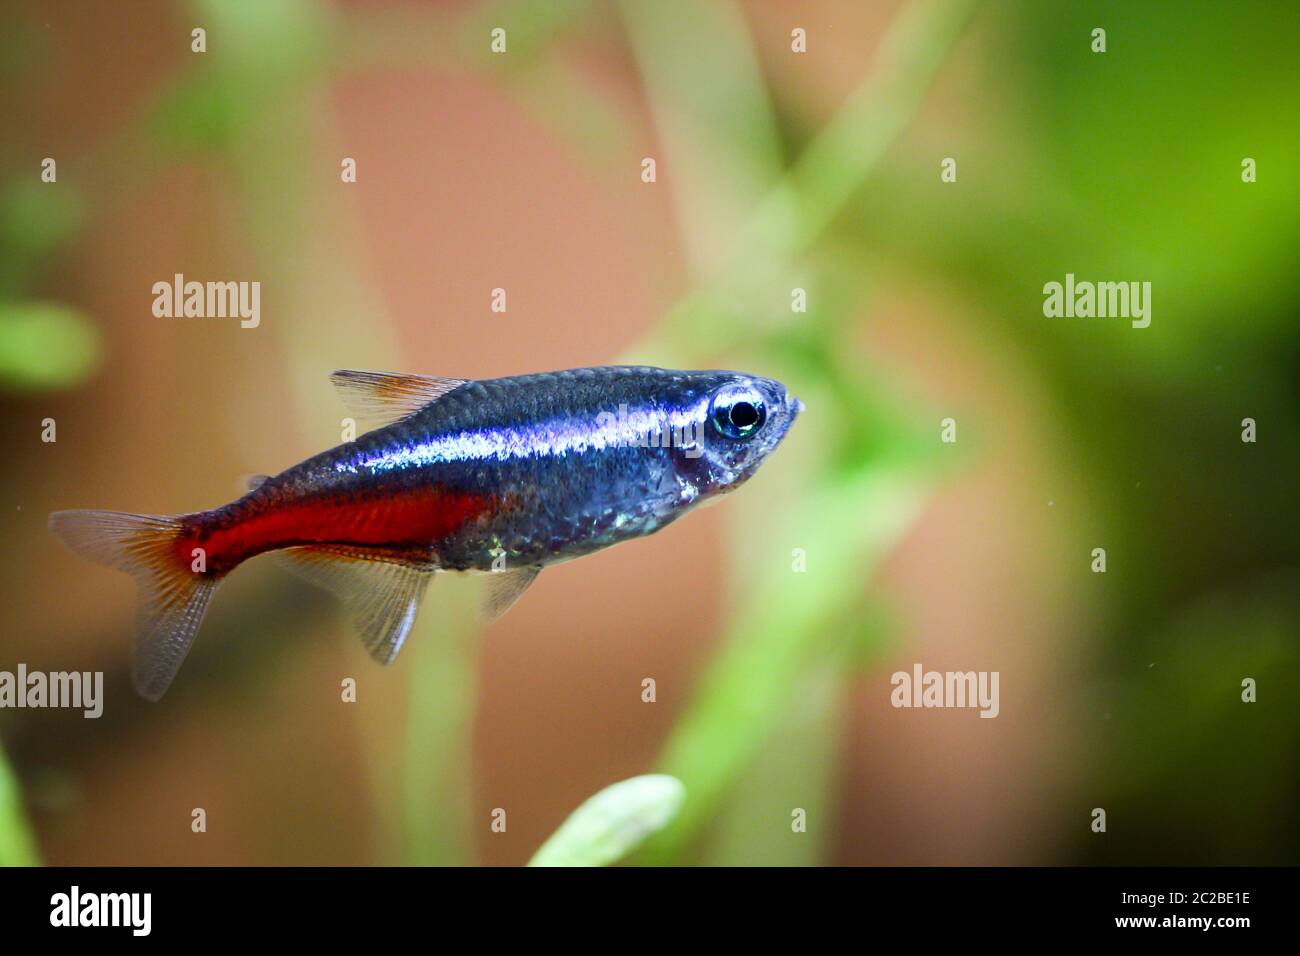 a neon fish in the aquarium Stock Photo